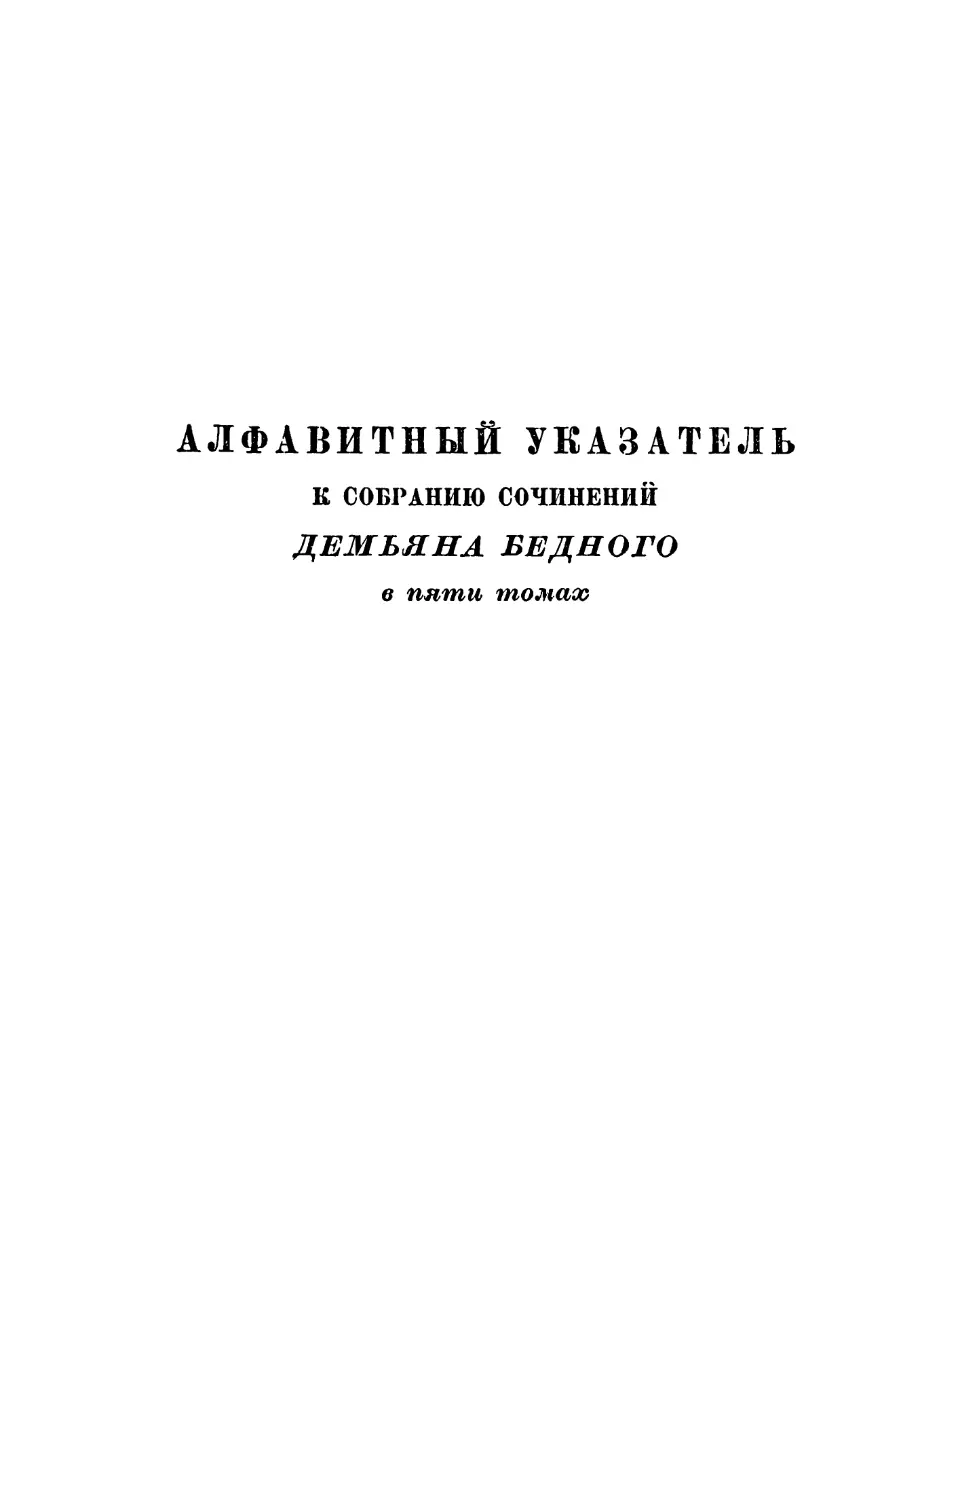 Алфавитный указатель к собранию сочинений Демьяна Бедного в пяти томах